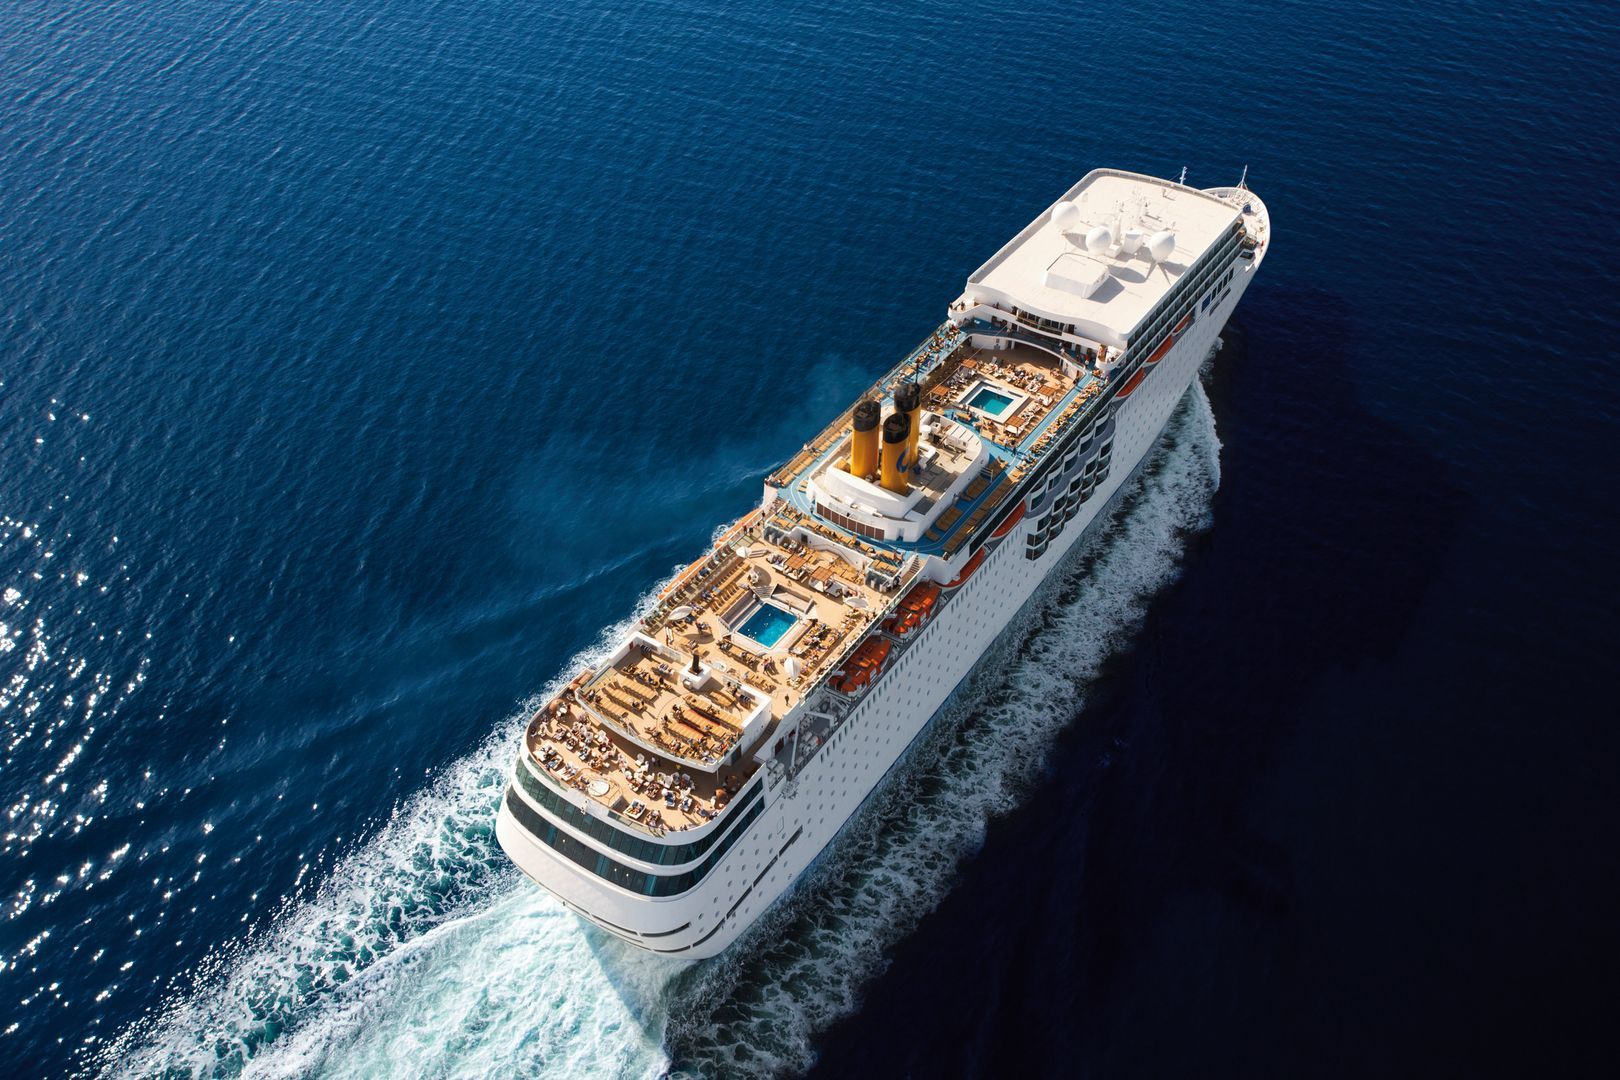 Costa neoRomantica | Cruiseships | Cruiseway